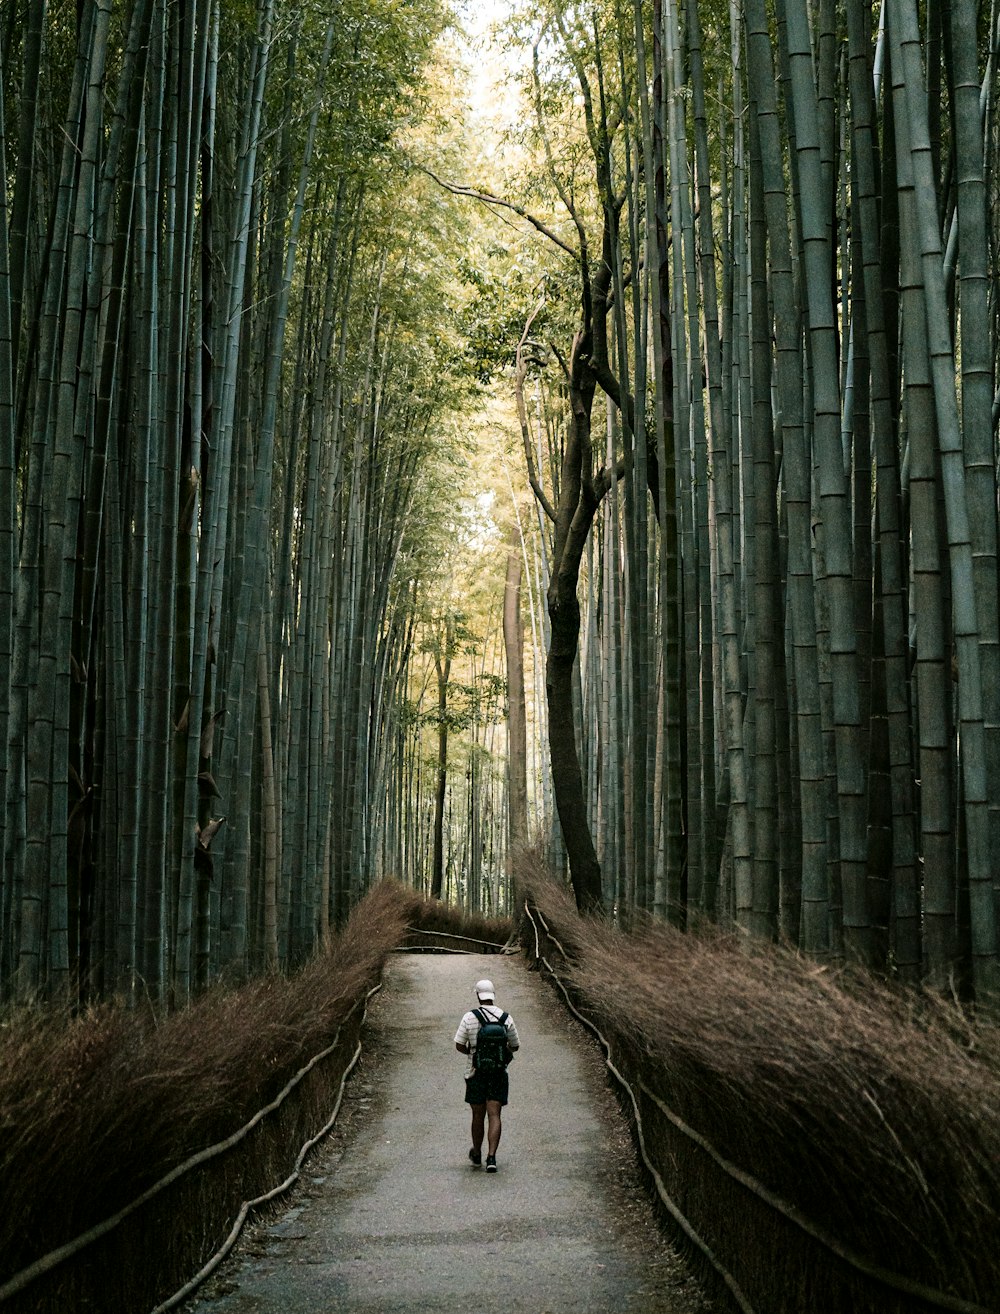 une personne marchant sur un chemin dans une forêt de bambous